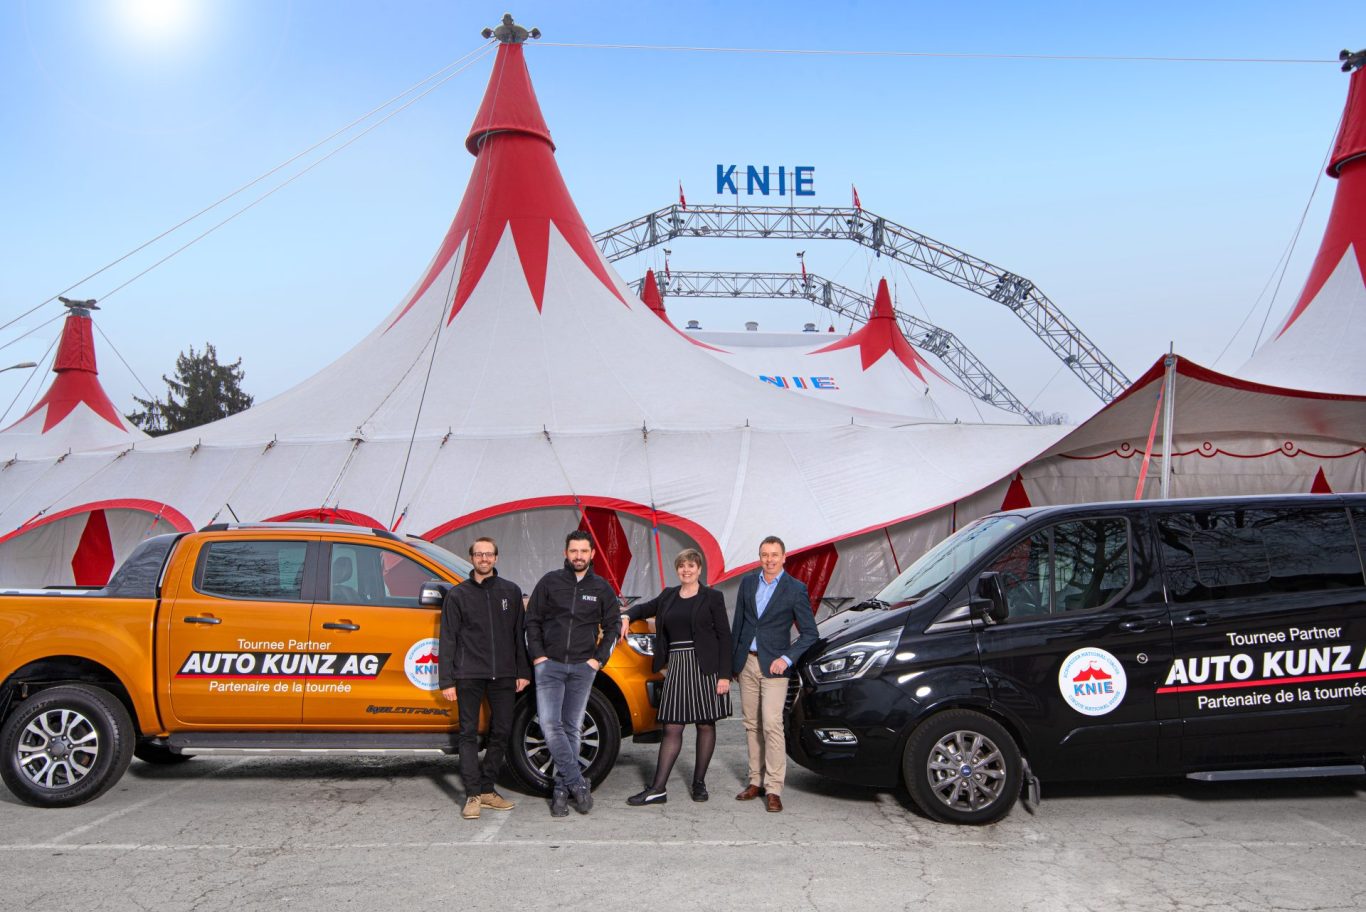 On tour with the National Circus Knie - Auto Kunz AG mit den schweizweit tiefsten Preisen